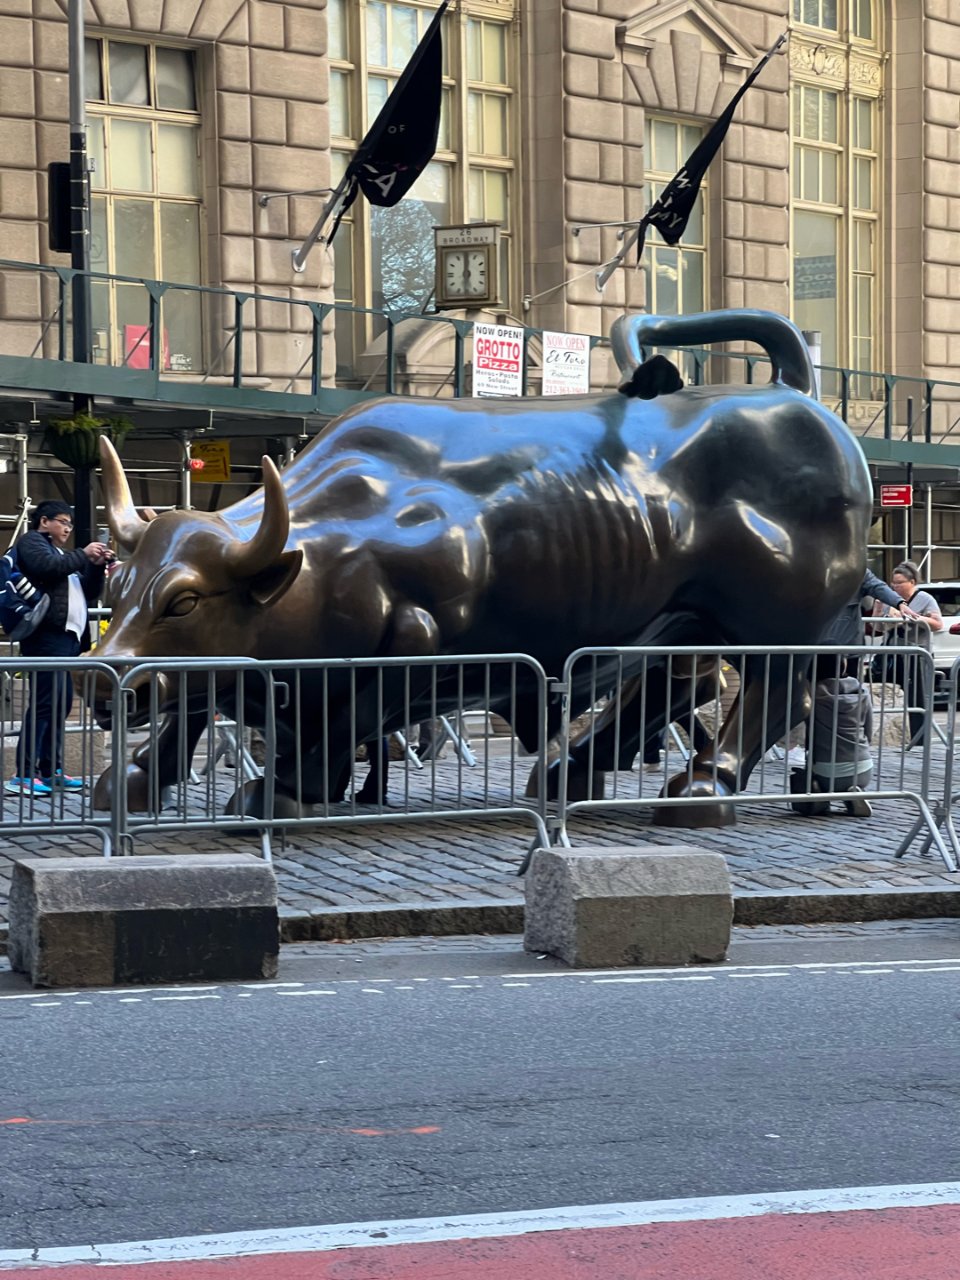 打卡纽约华尔街铜牛...